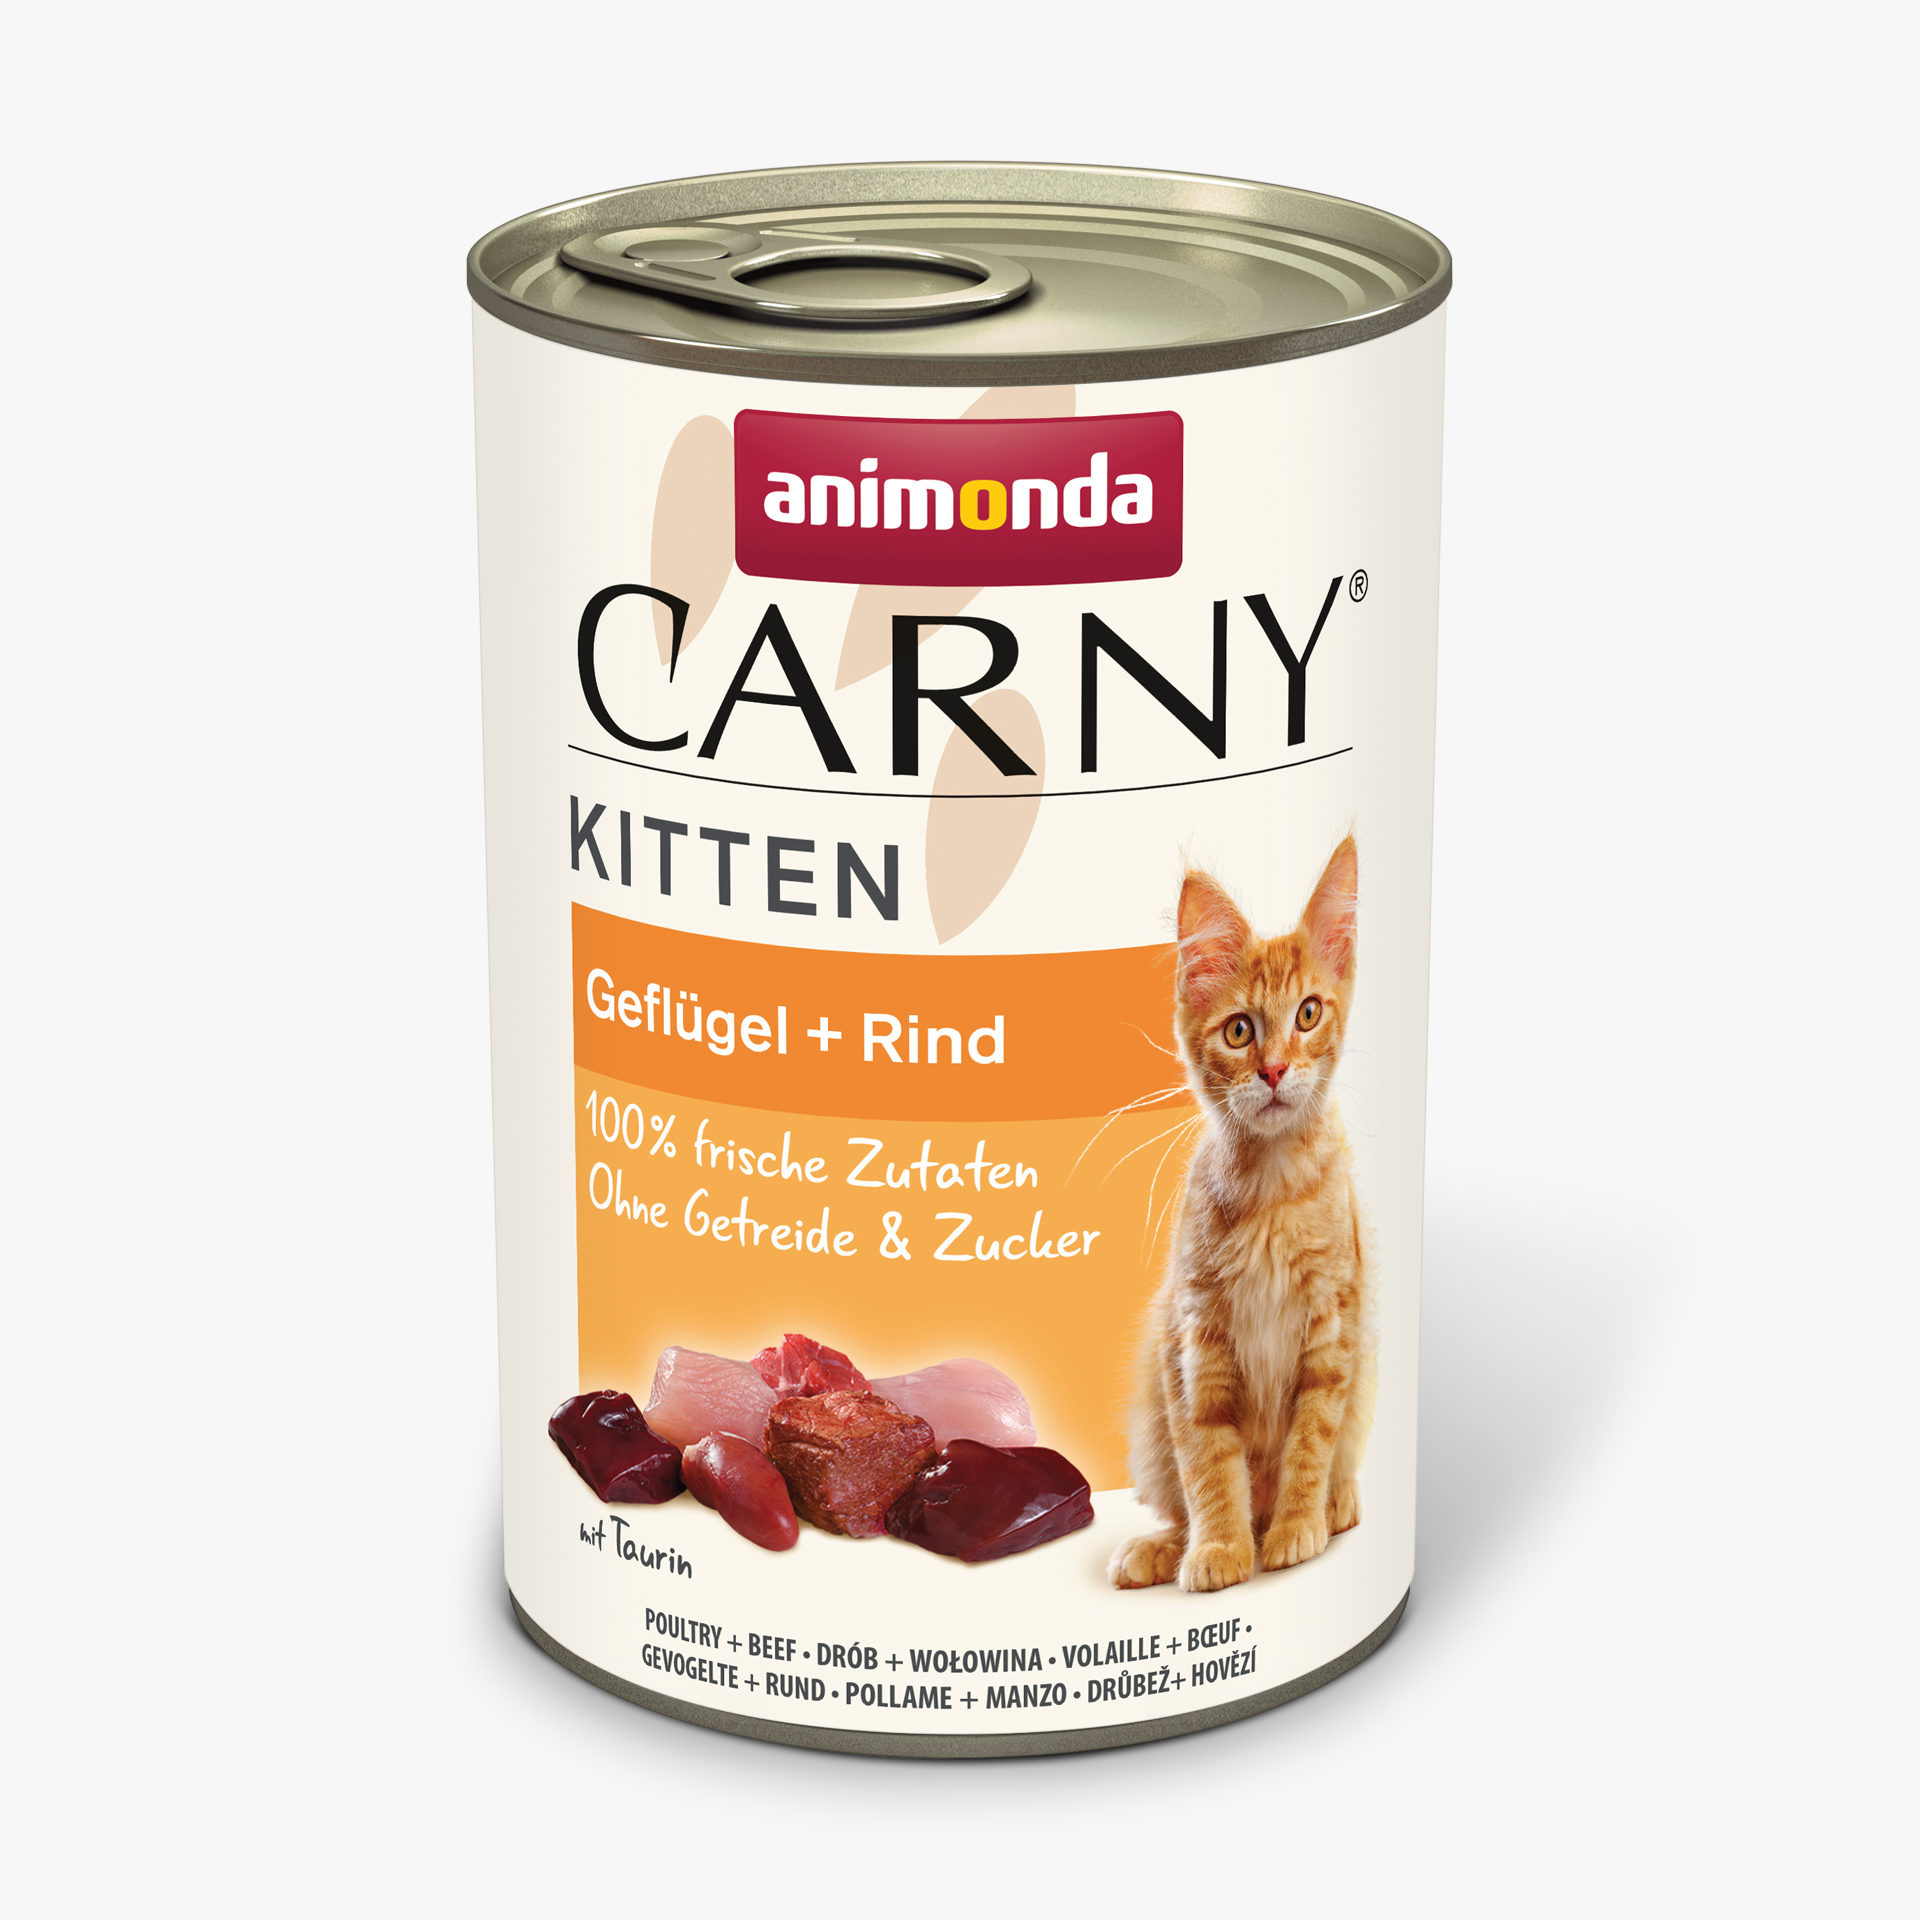 Carny Kitten Geflügel + Rind